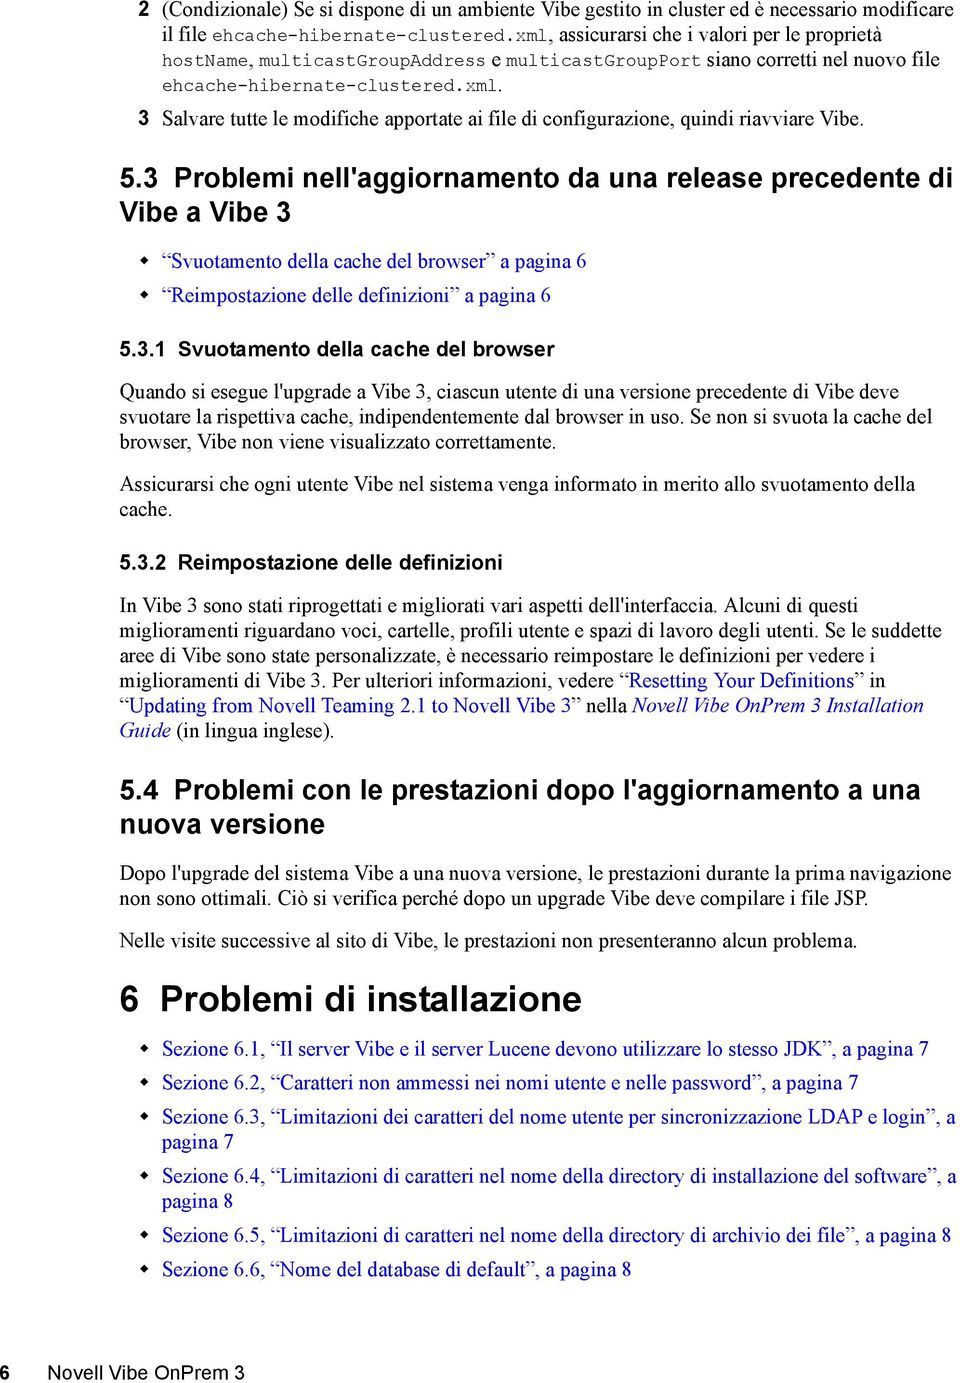 5.3 Problemi nell'aggiornamento da una release precedente di Vibe a Vibe 3 Svuotamento della cache del browser a pagina 6 Reimpostazione delle definizioni a pagina 6 5.3.1 Svuotamento della cache del